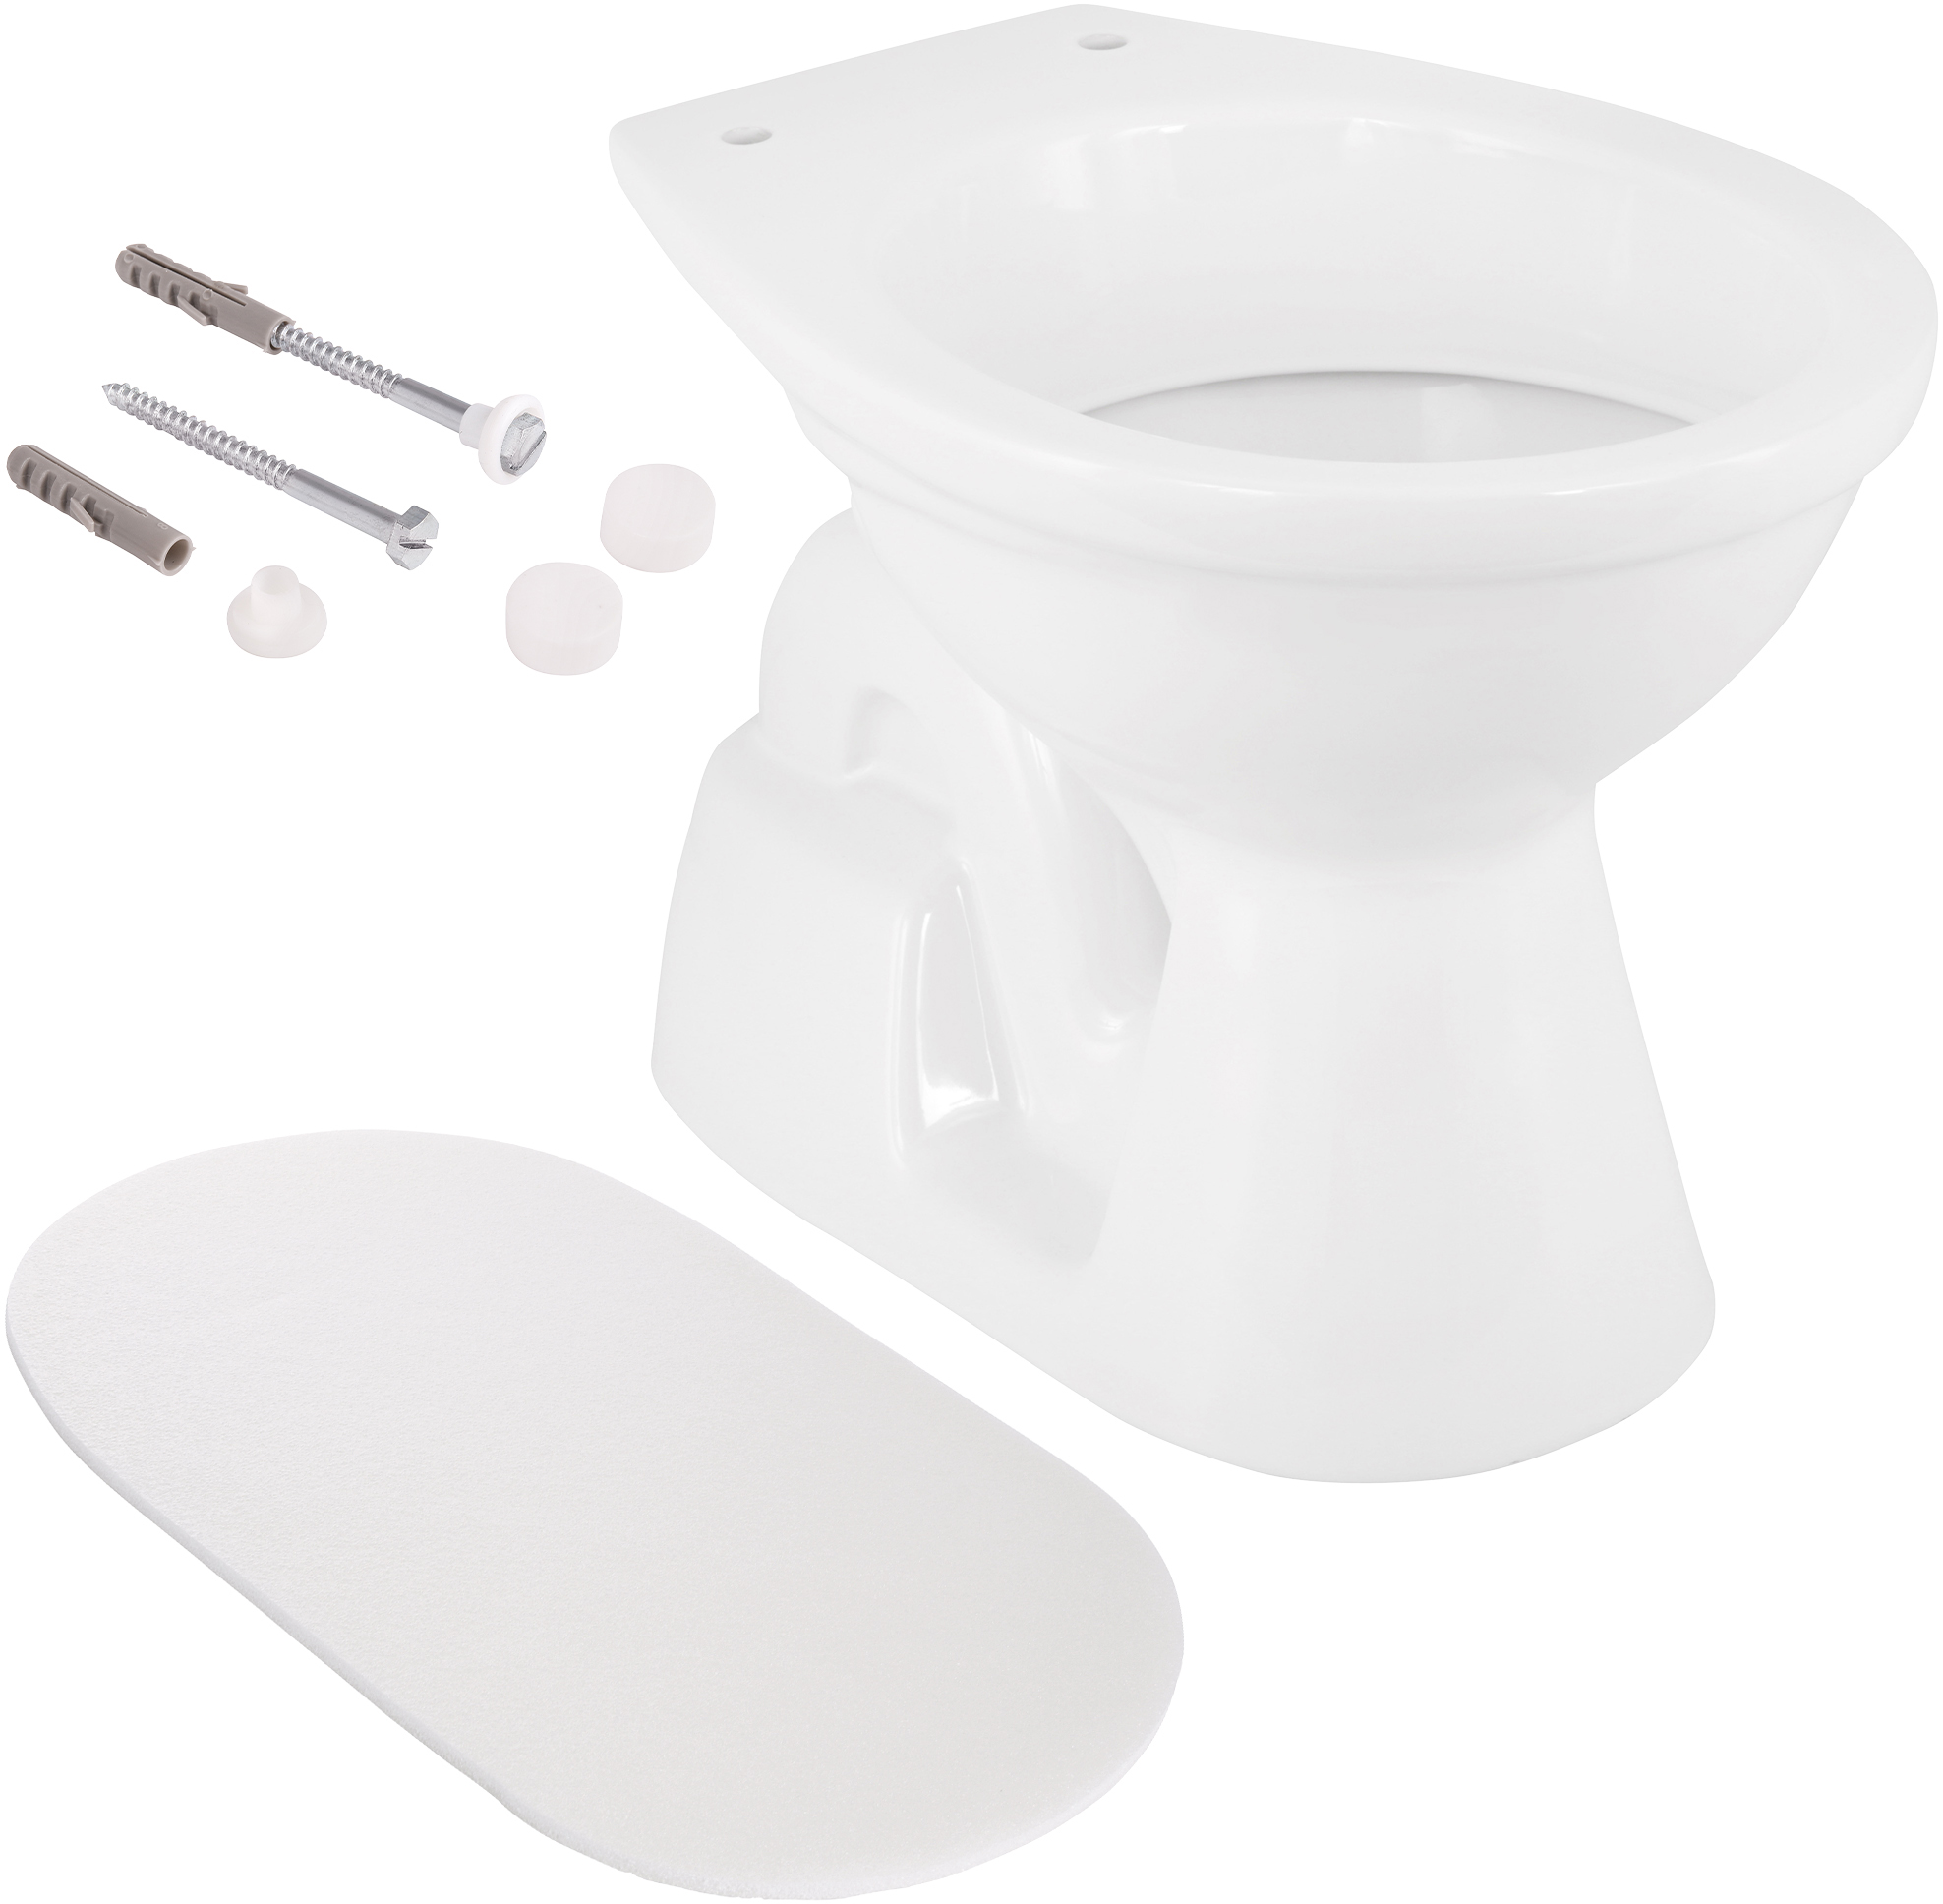 Komplett-Set Stand-WC mit Schallschutz und Befestigung, Weiß